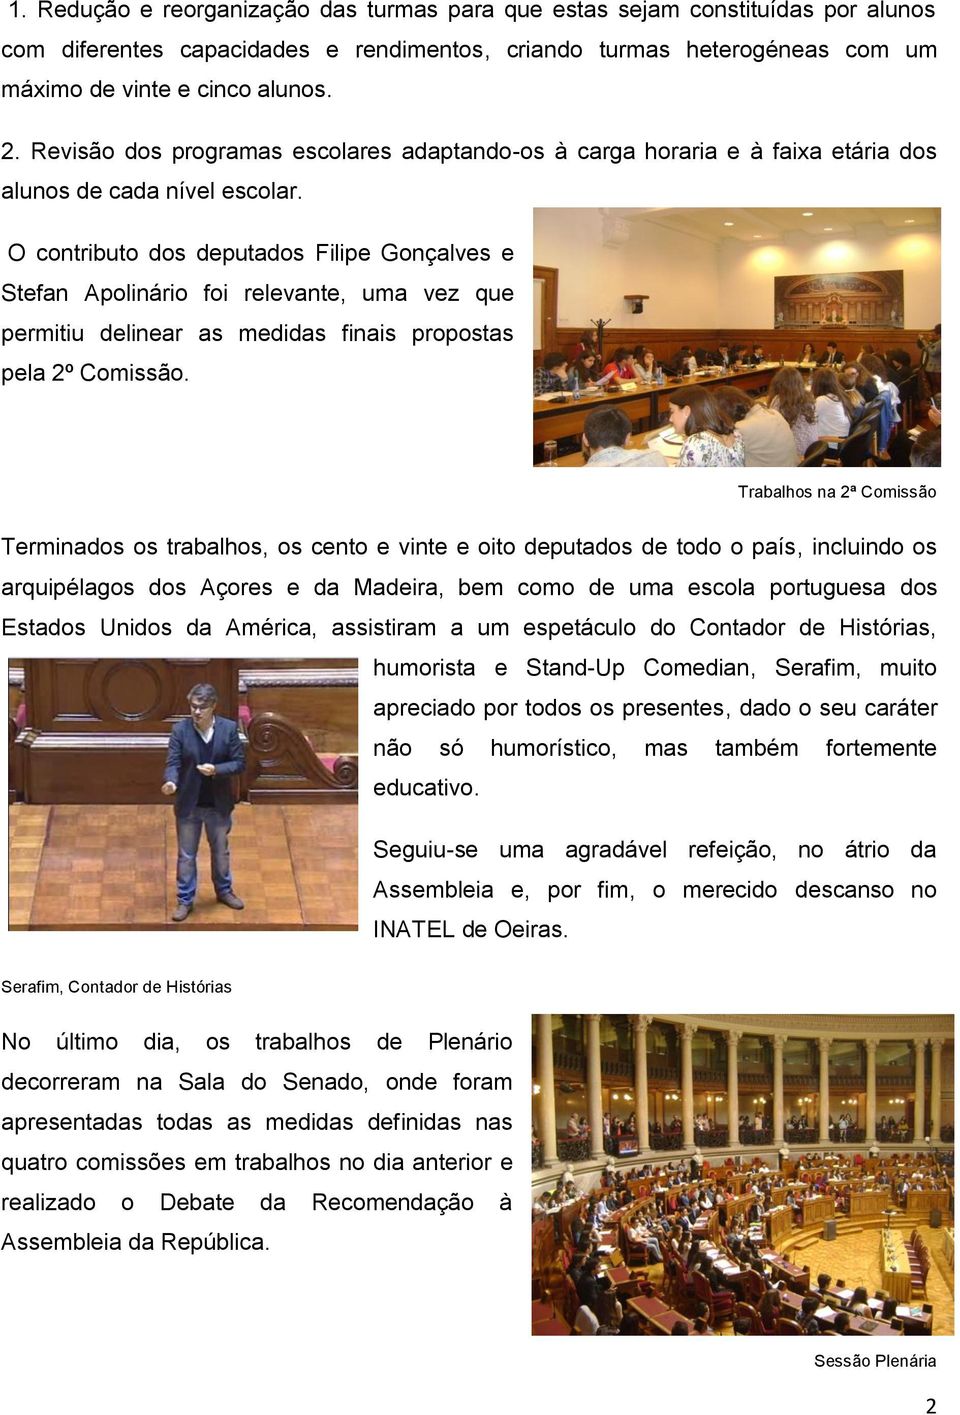 O contributo dos deputados Filipe Gonçalves e Stefan Apolinário foi relevante, uma vez que permitiu delinear as medidas finais propostas pela 2º Comissão.